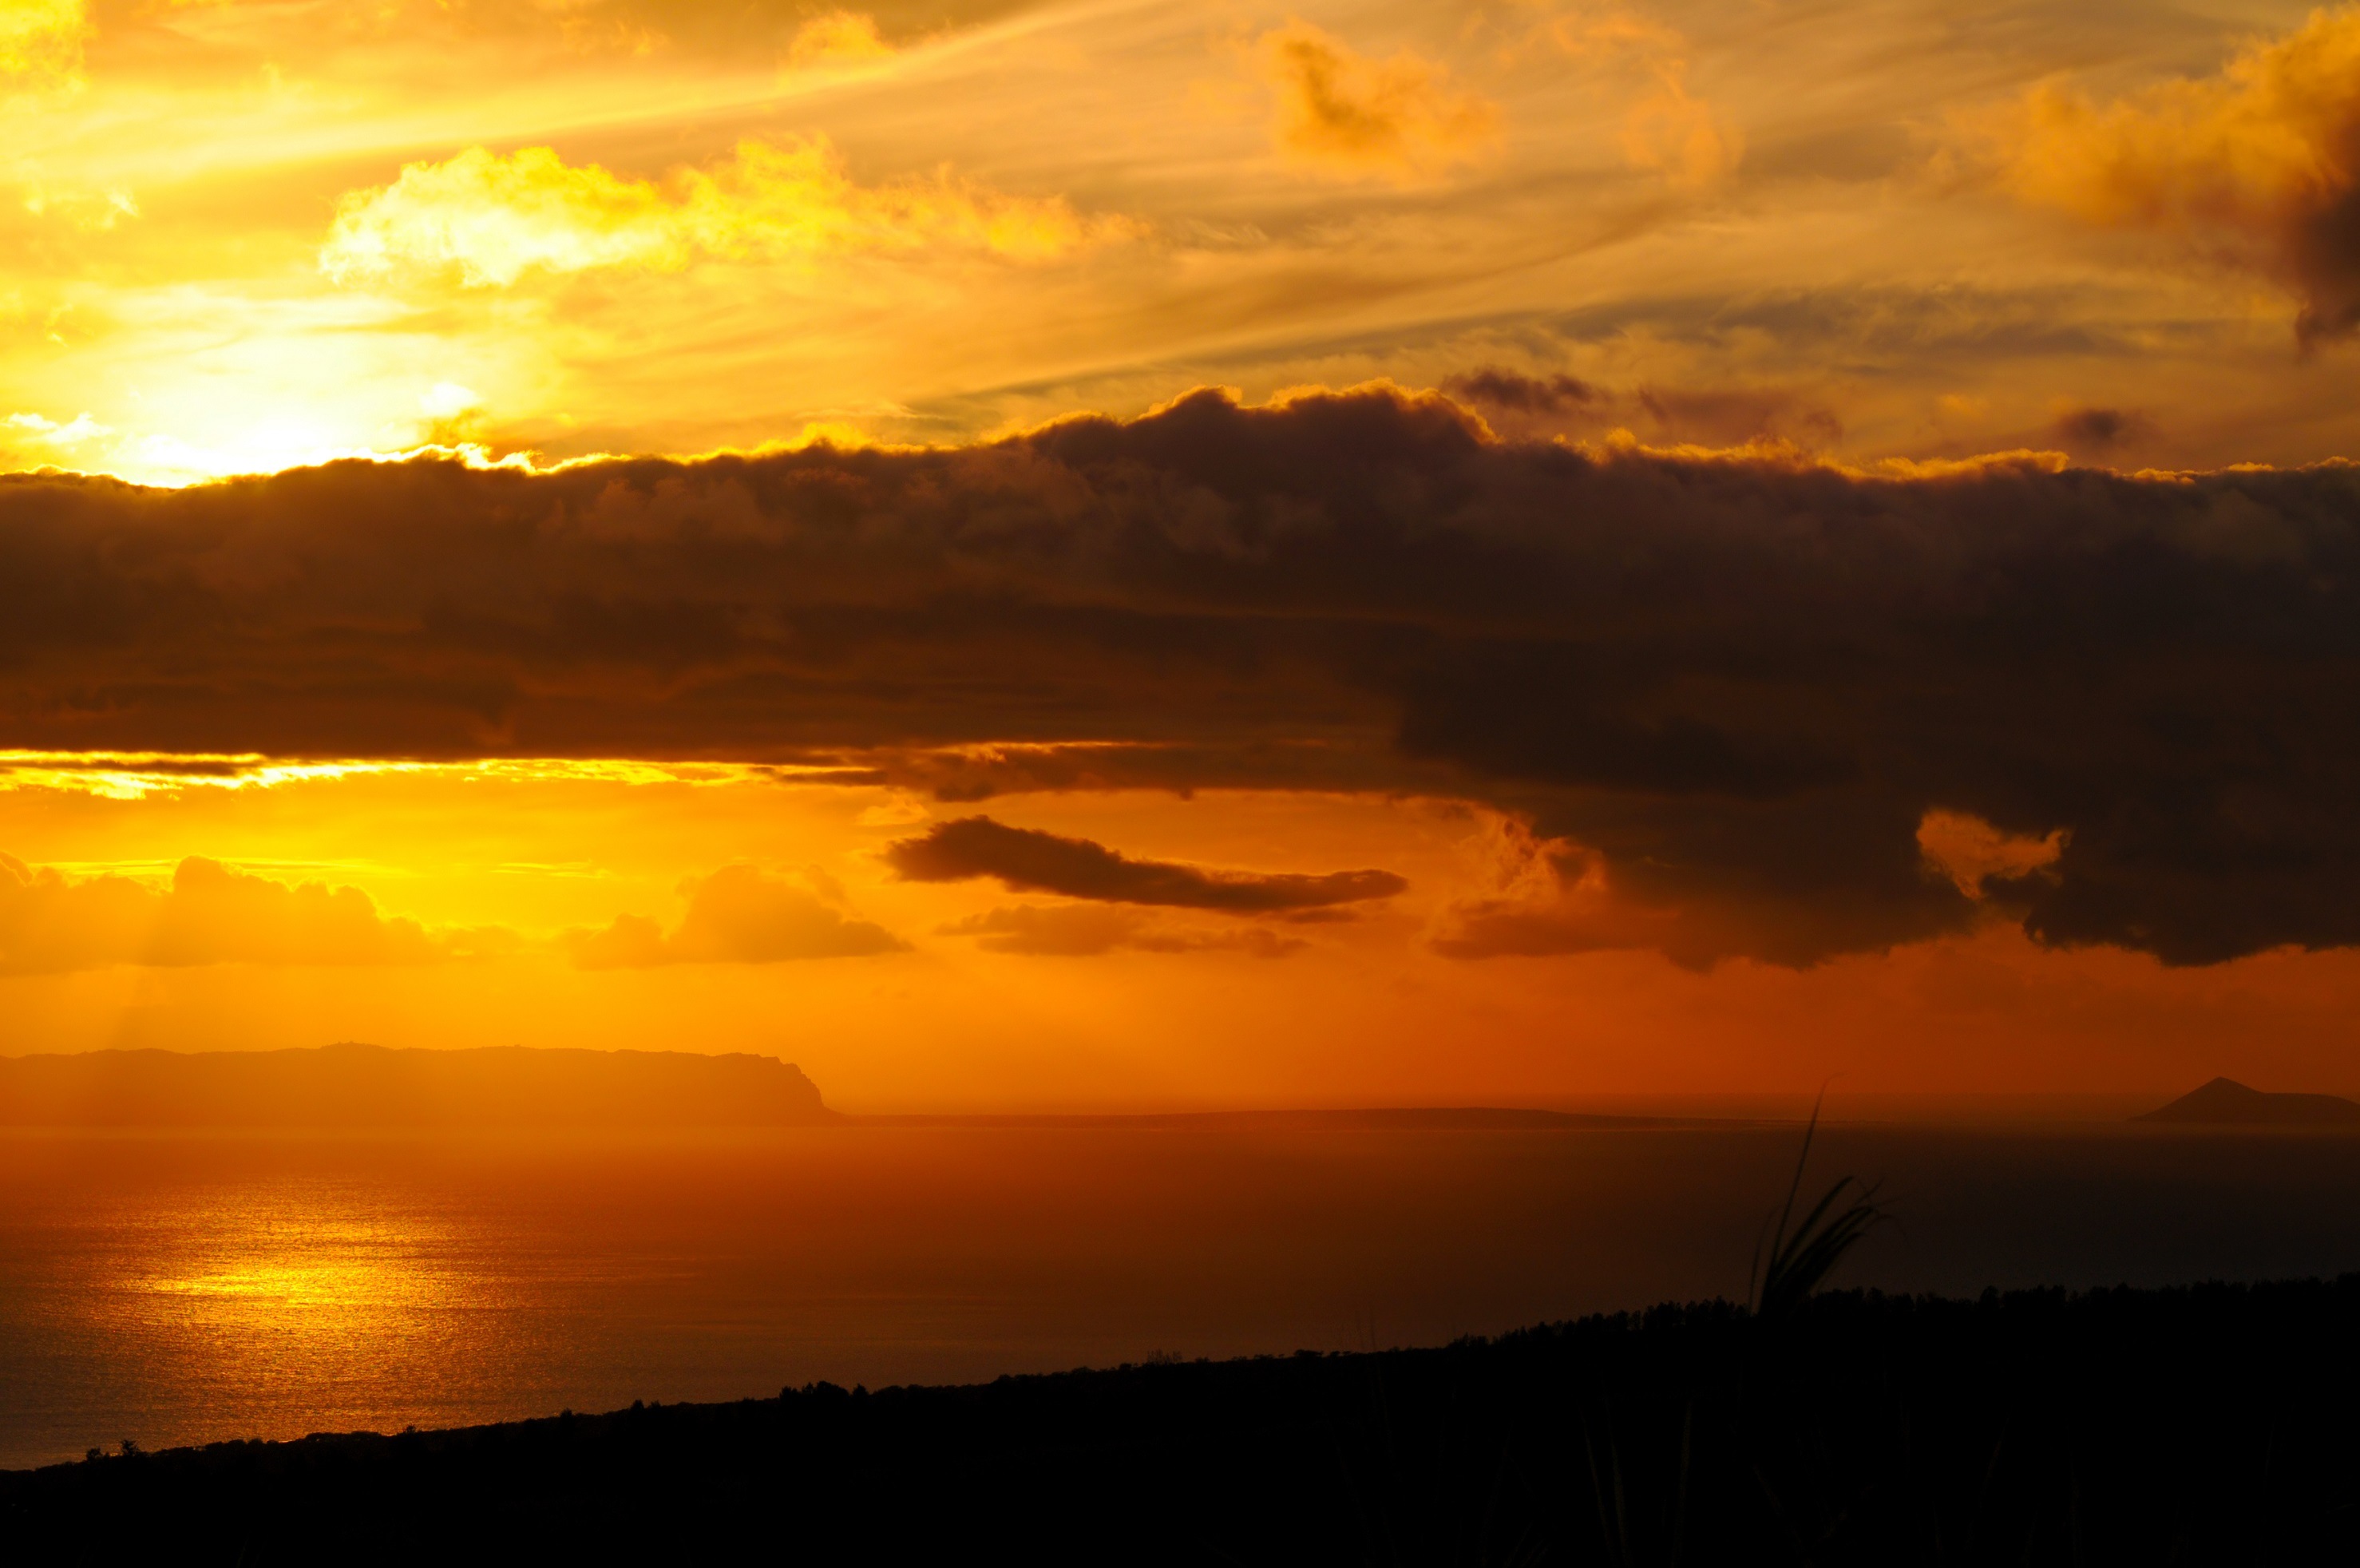 Sunset over the Hawaiian island of Niihau